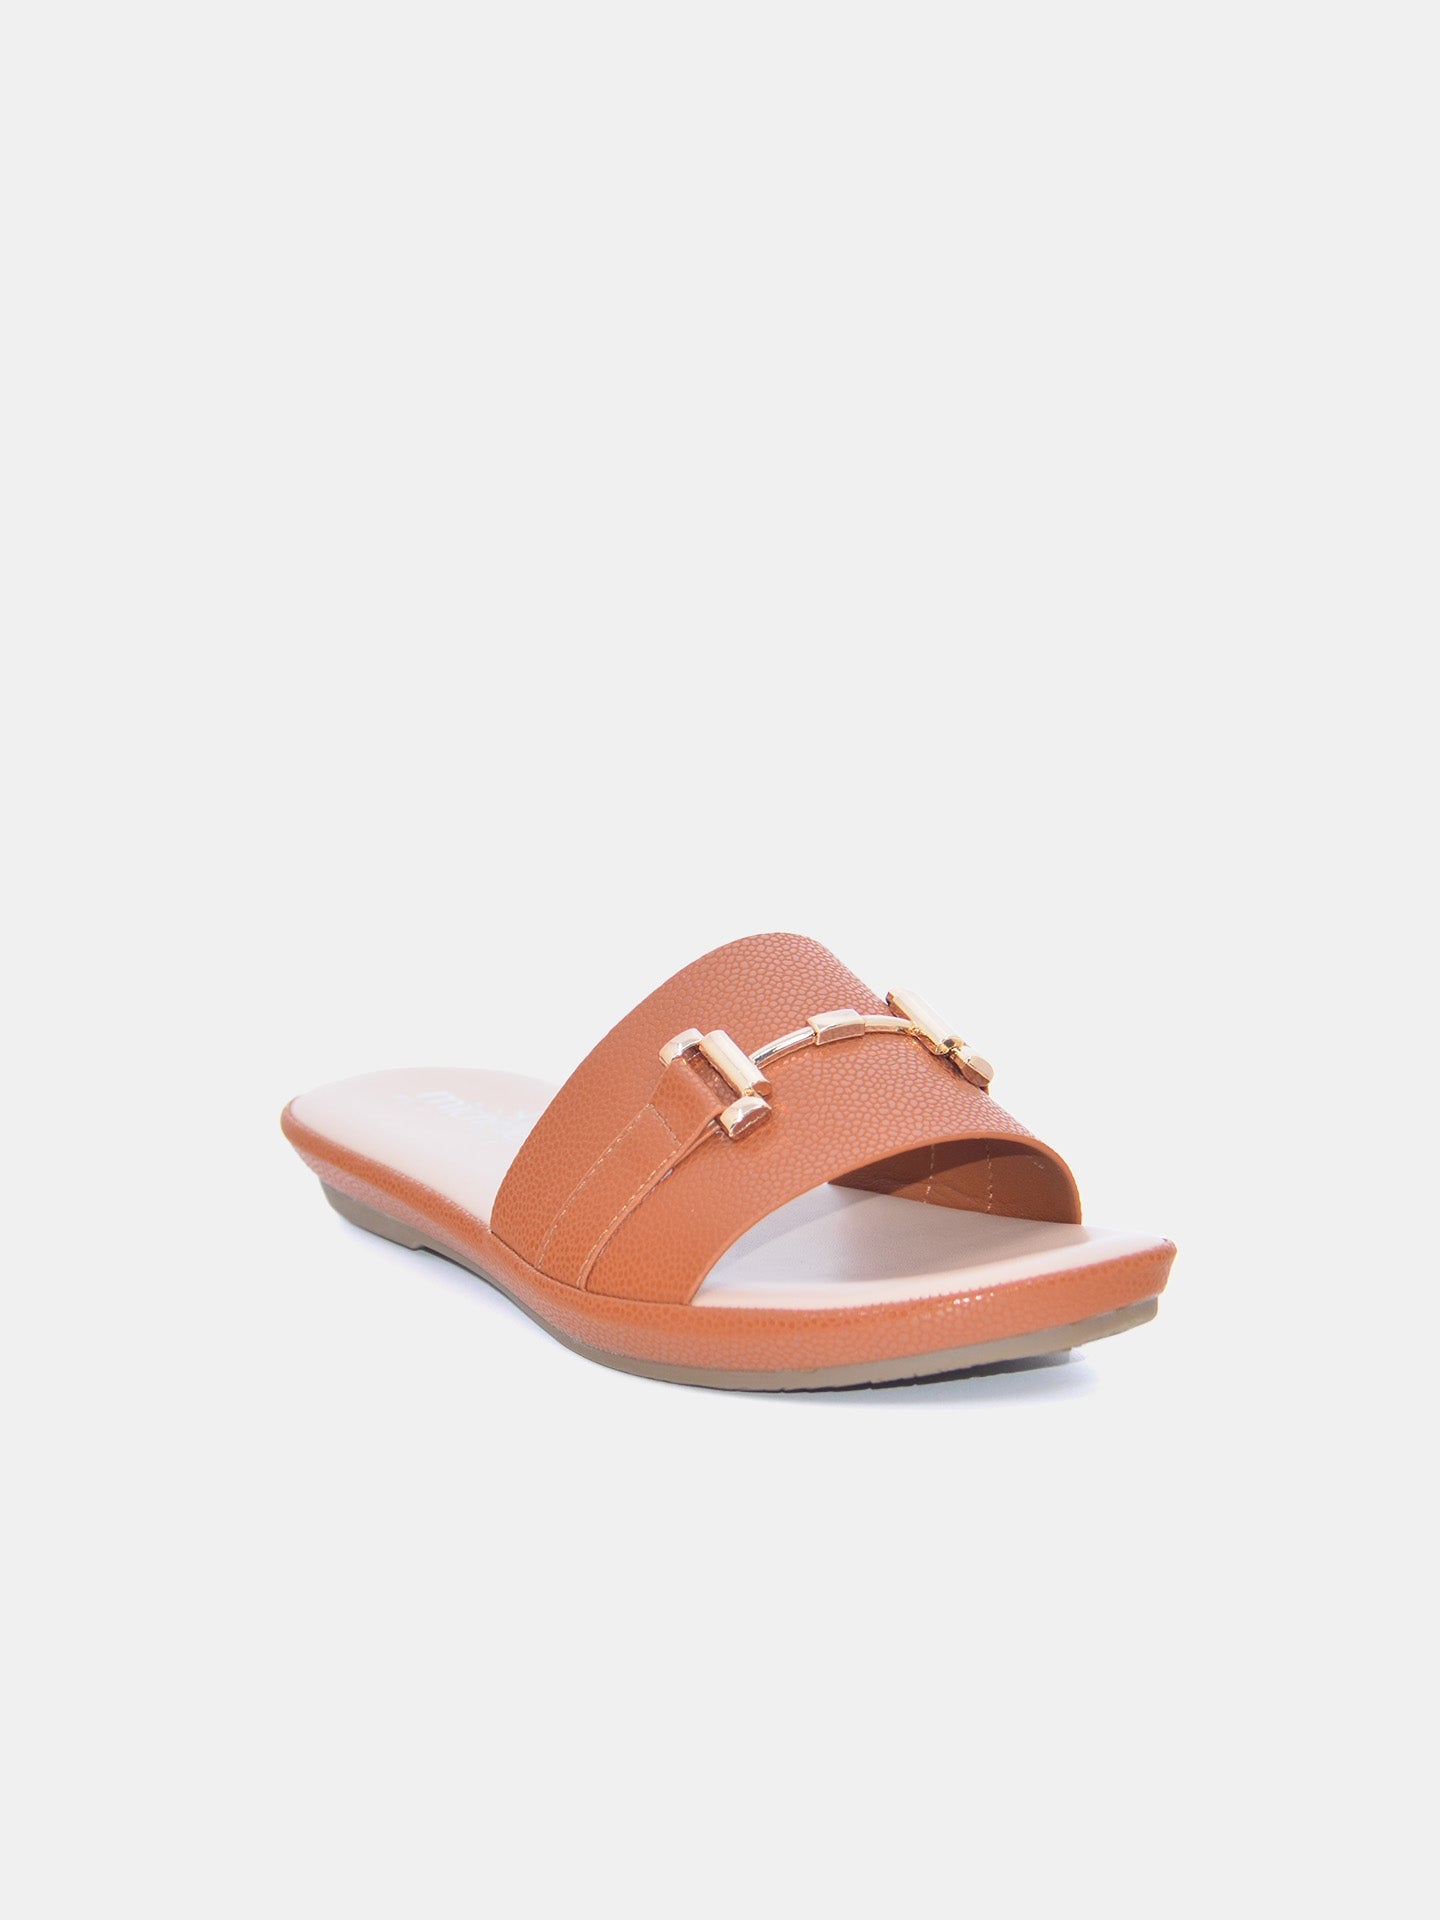 Michelle Morgan 114RC676 Women's Flat Sandals #color_Light Brown